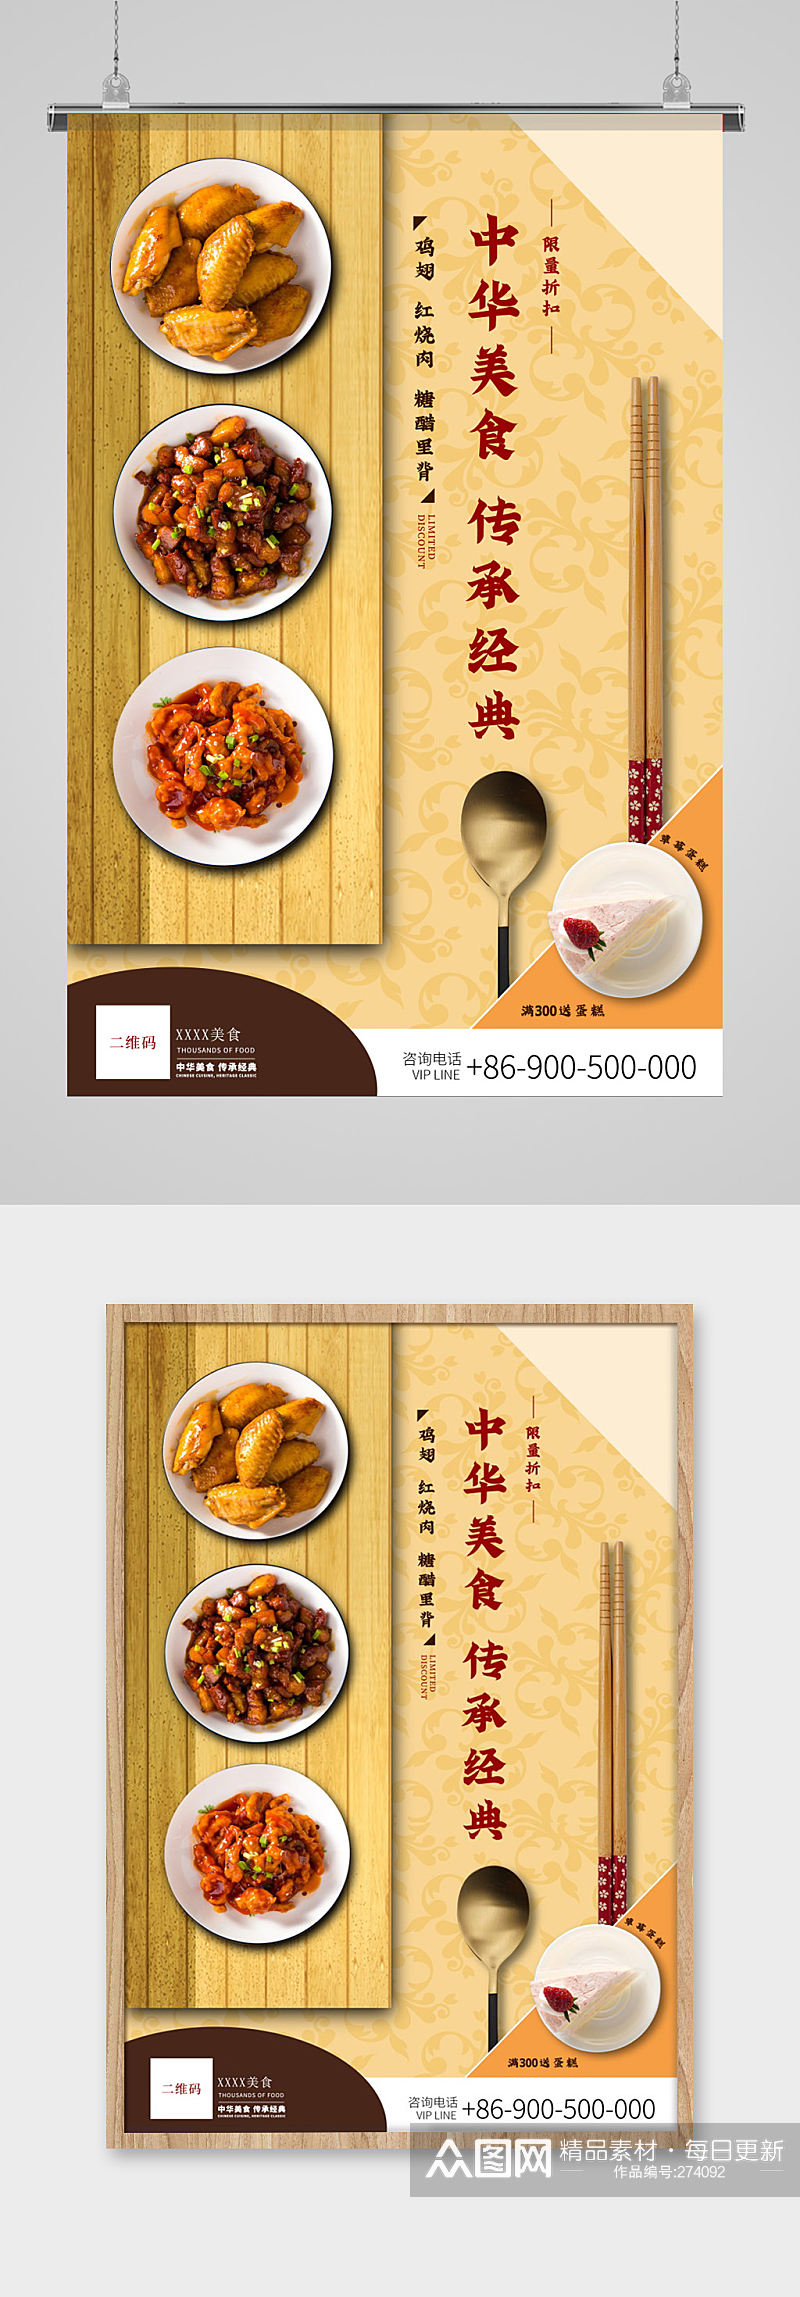 中华美食料理餐饮海报素材